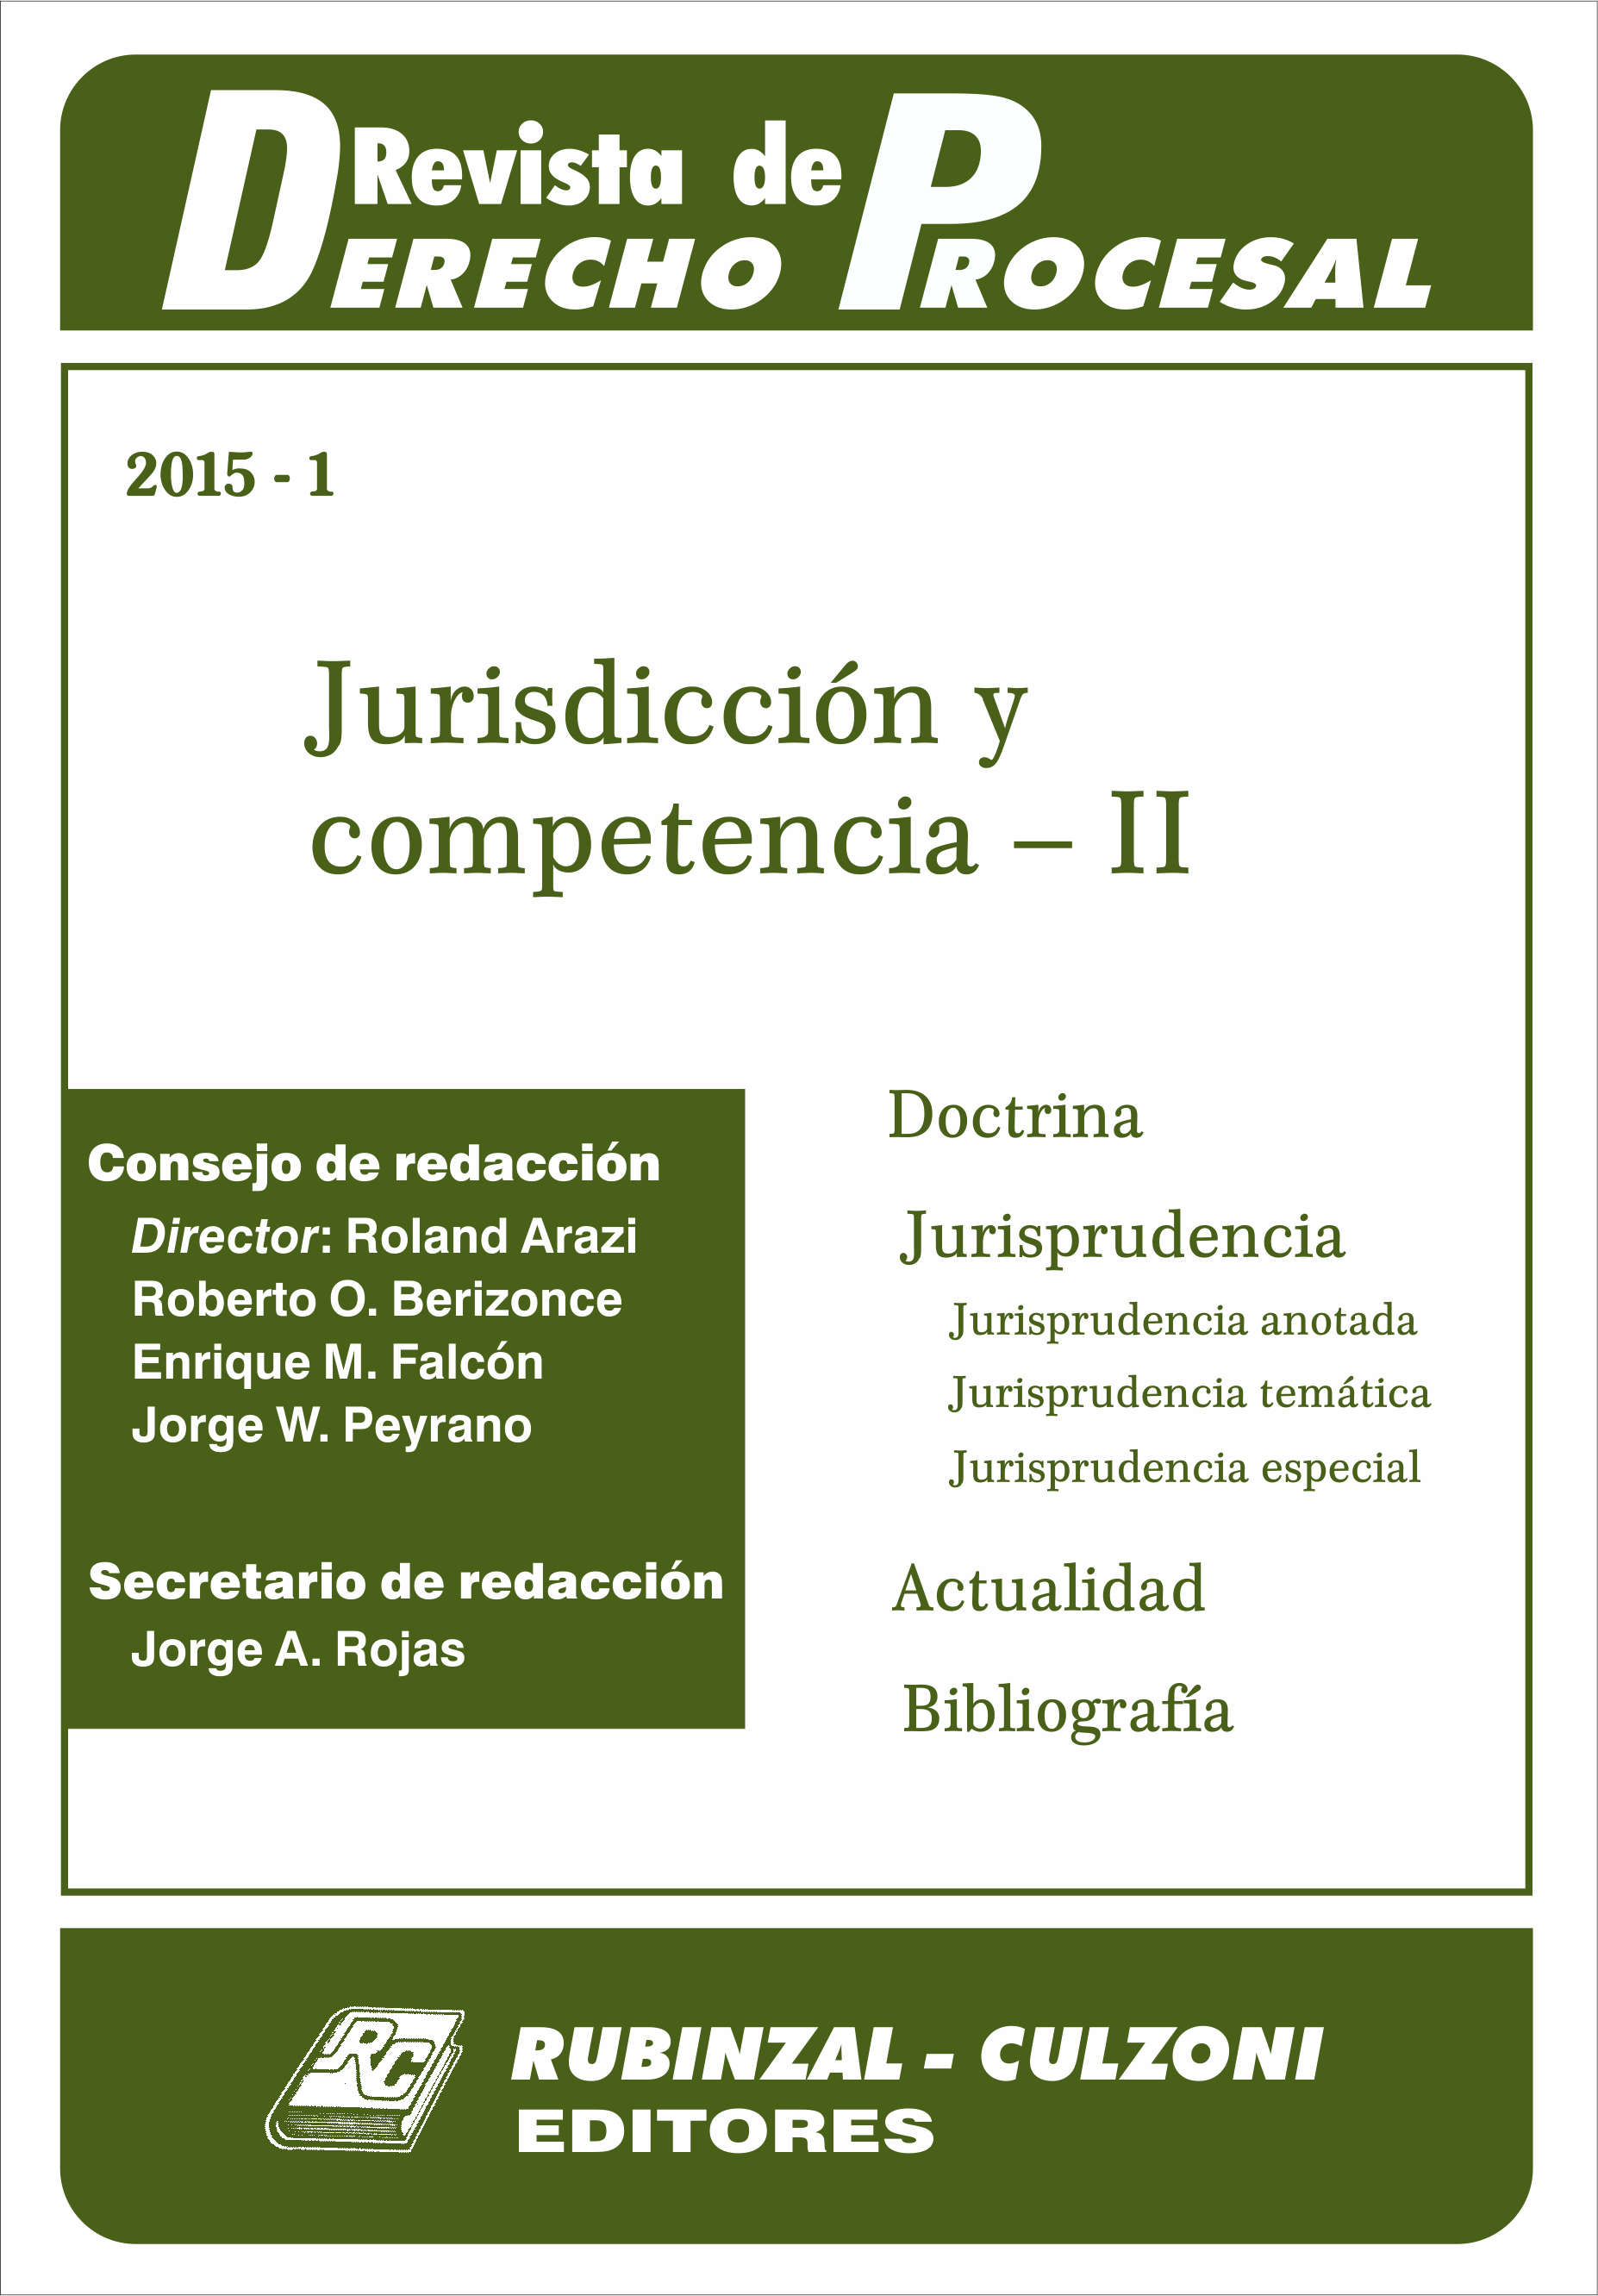 Revista de Derecho Procesal - Jurisdicción y competencia - II